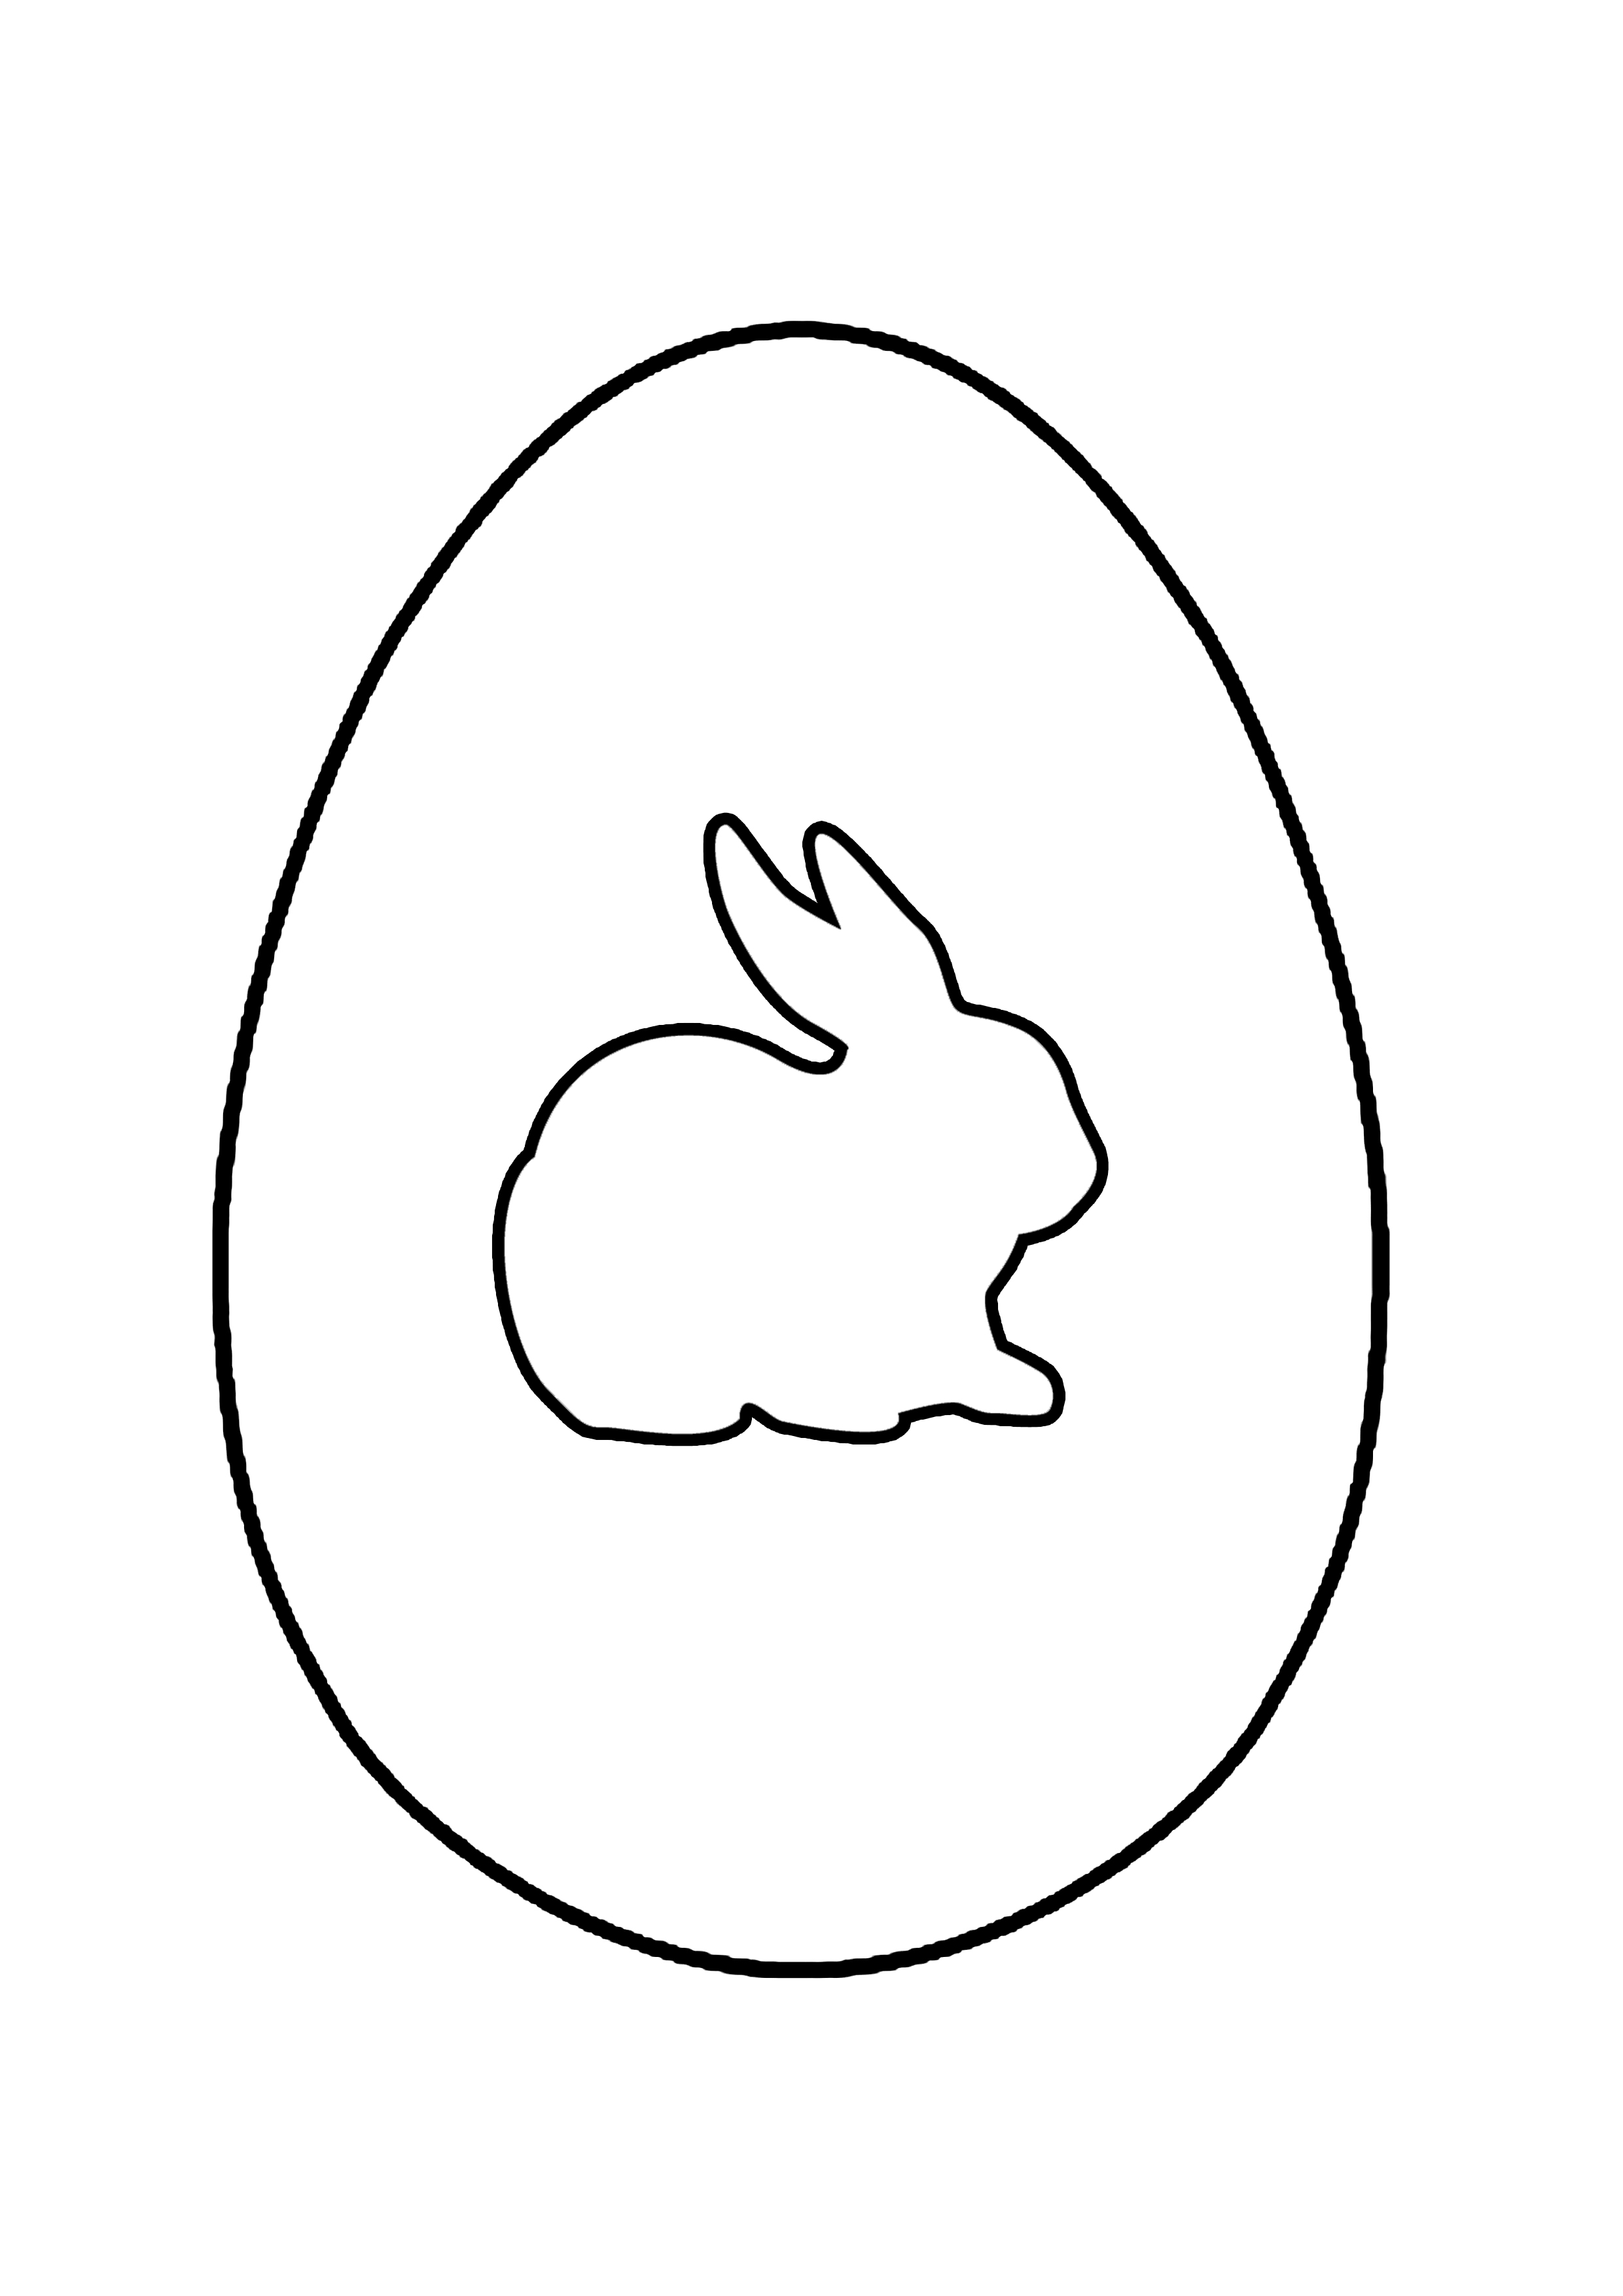 Распечатать раскраску яйца. Яйцо для раскрашивания. Яйцо трафарет. Пасхальное яйцо раскраска. Яйцо раскраска для детей.